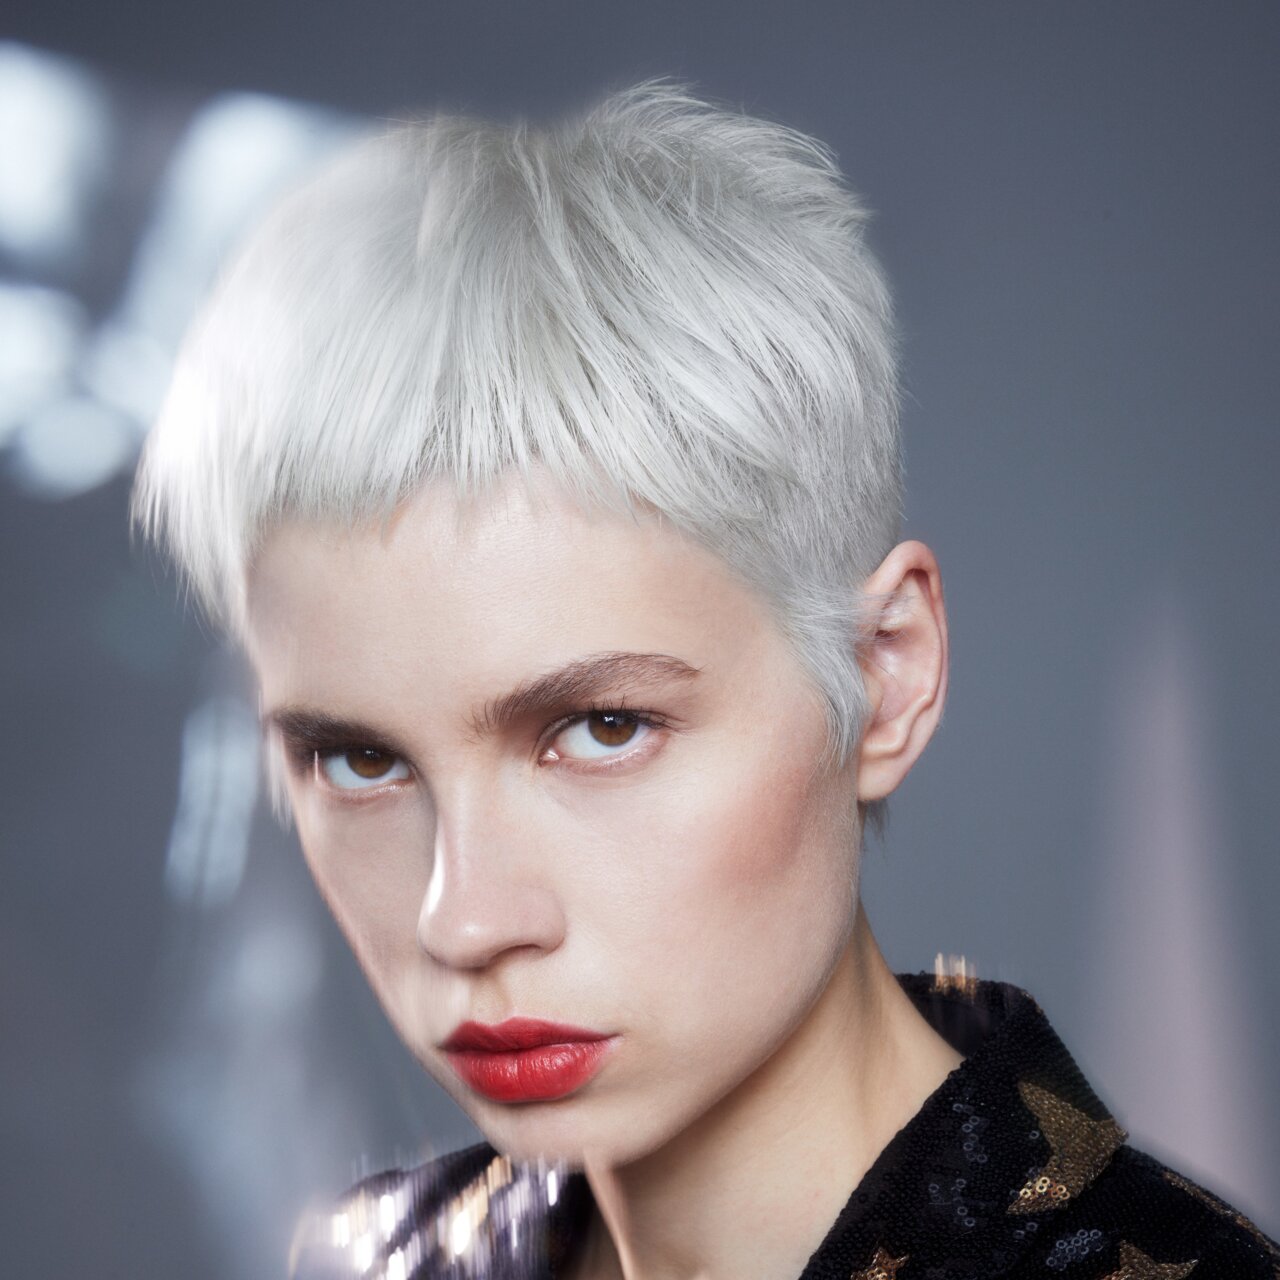 Porträt einer schönen jungen Frau, die die Trend-Haarfarbe Platinblond mit einem sehr kurzen Pixie präsentiert